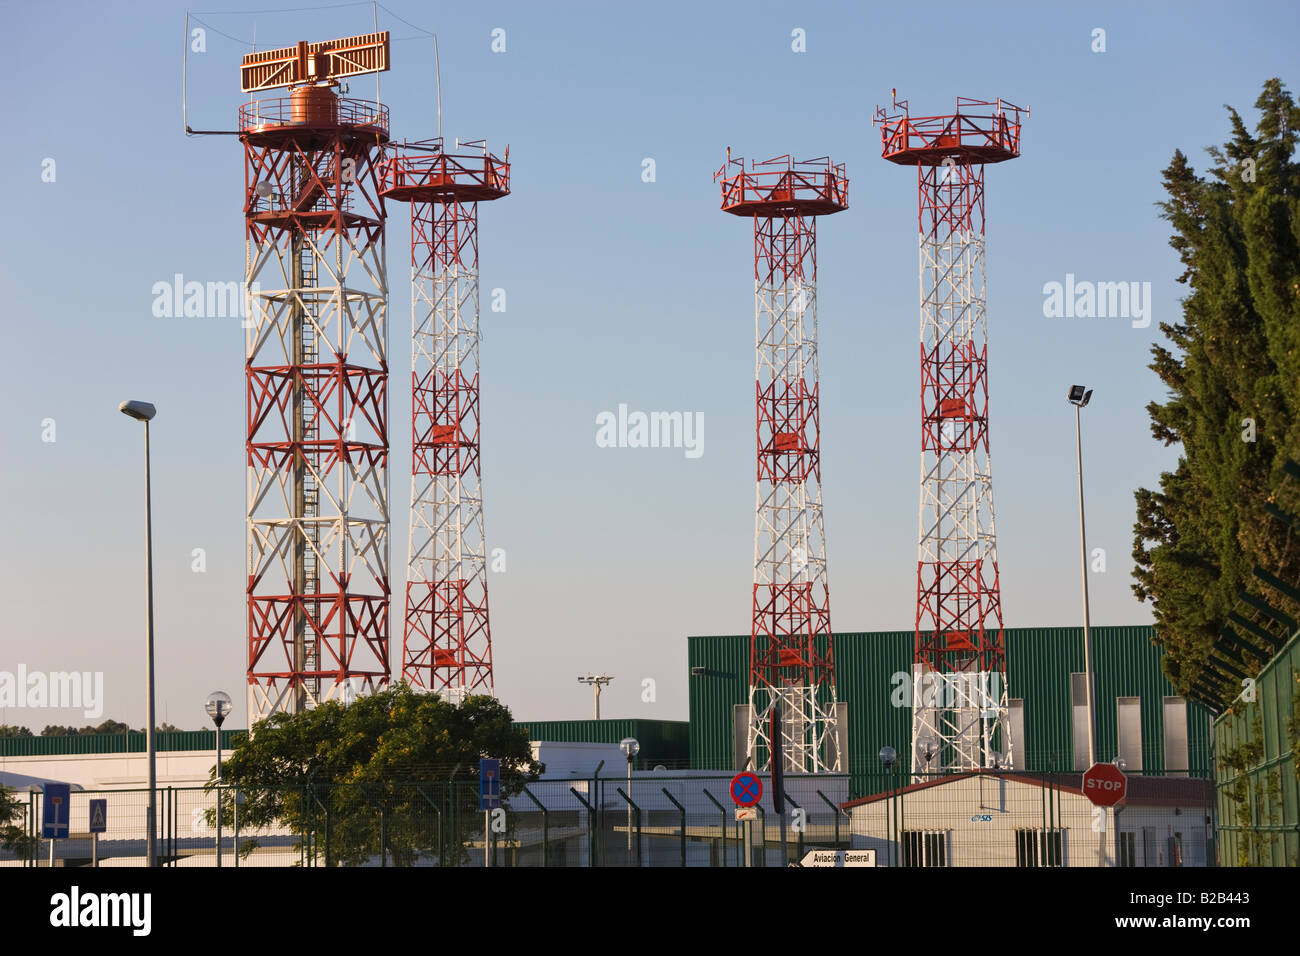 La tour radar et antennes de communication à l'aéroport de Malaga Espagne Banque D'Images